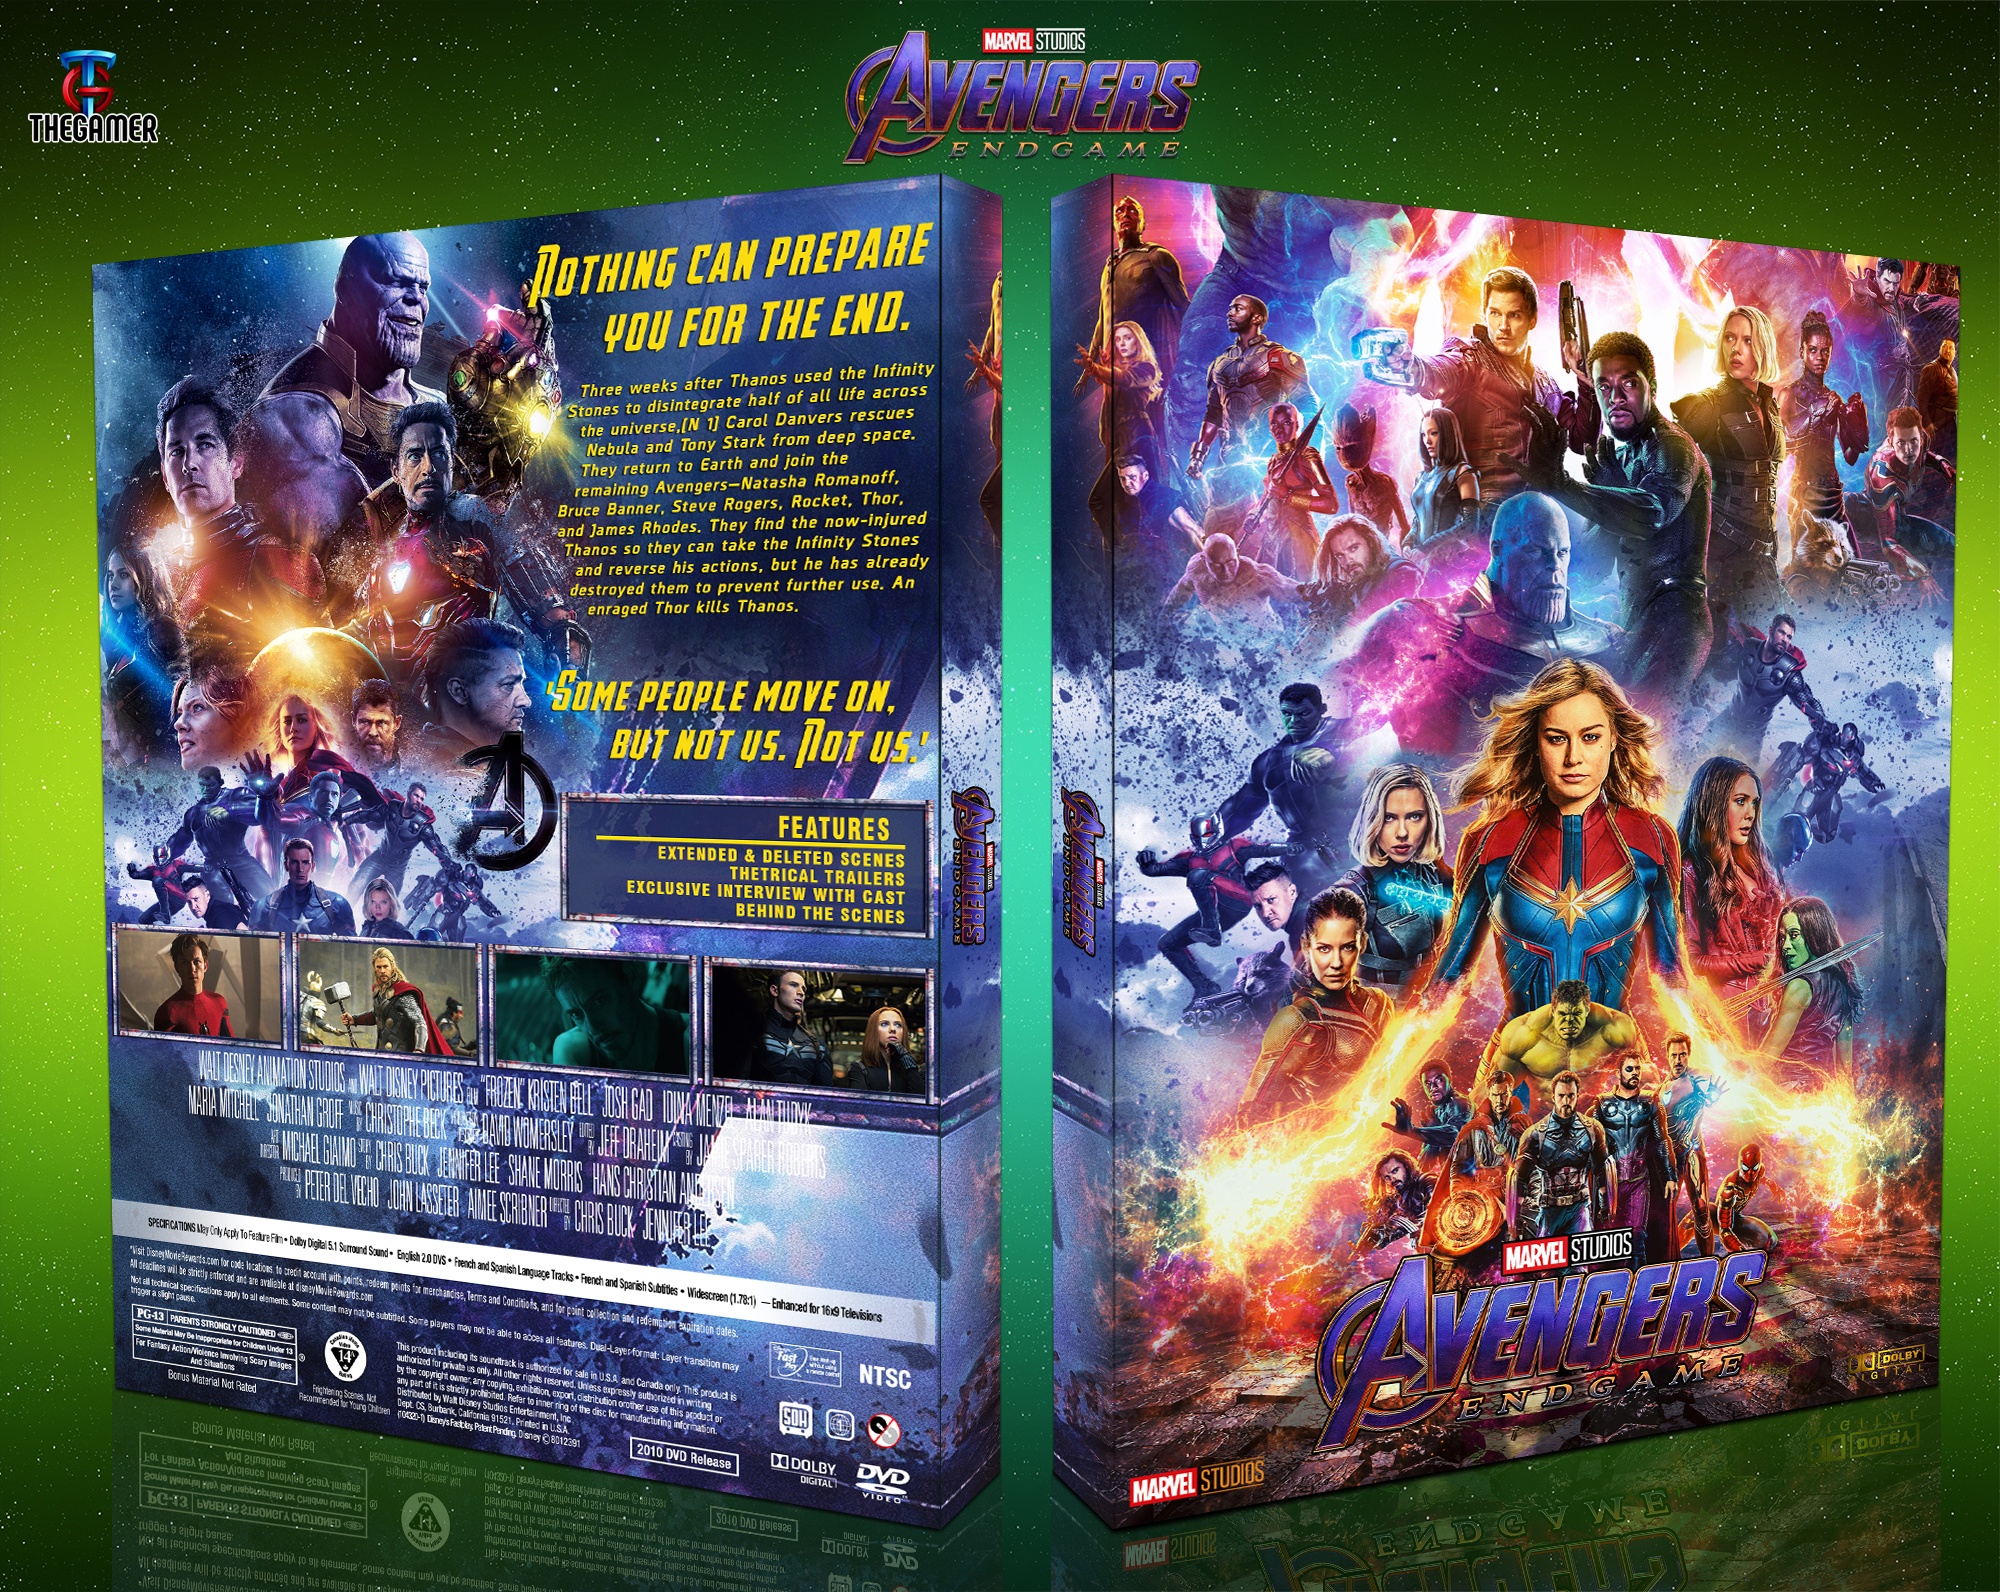 Avengers: Endgame box cover